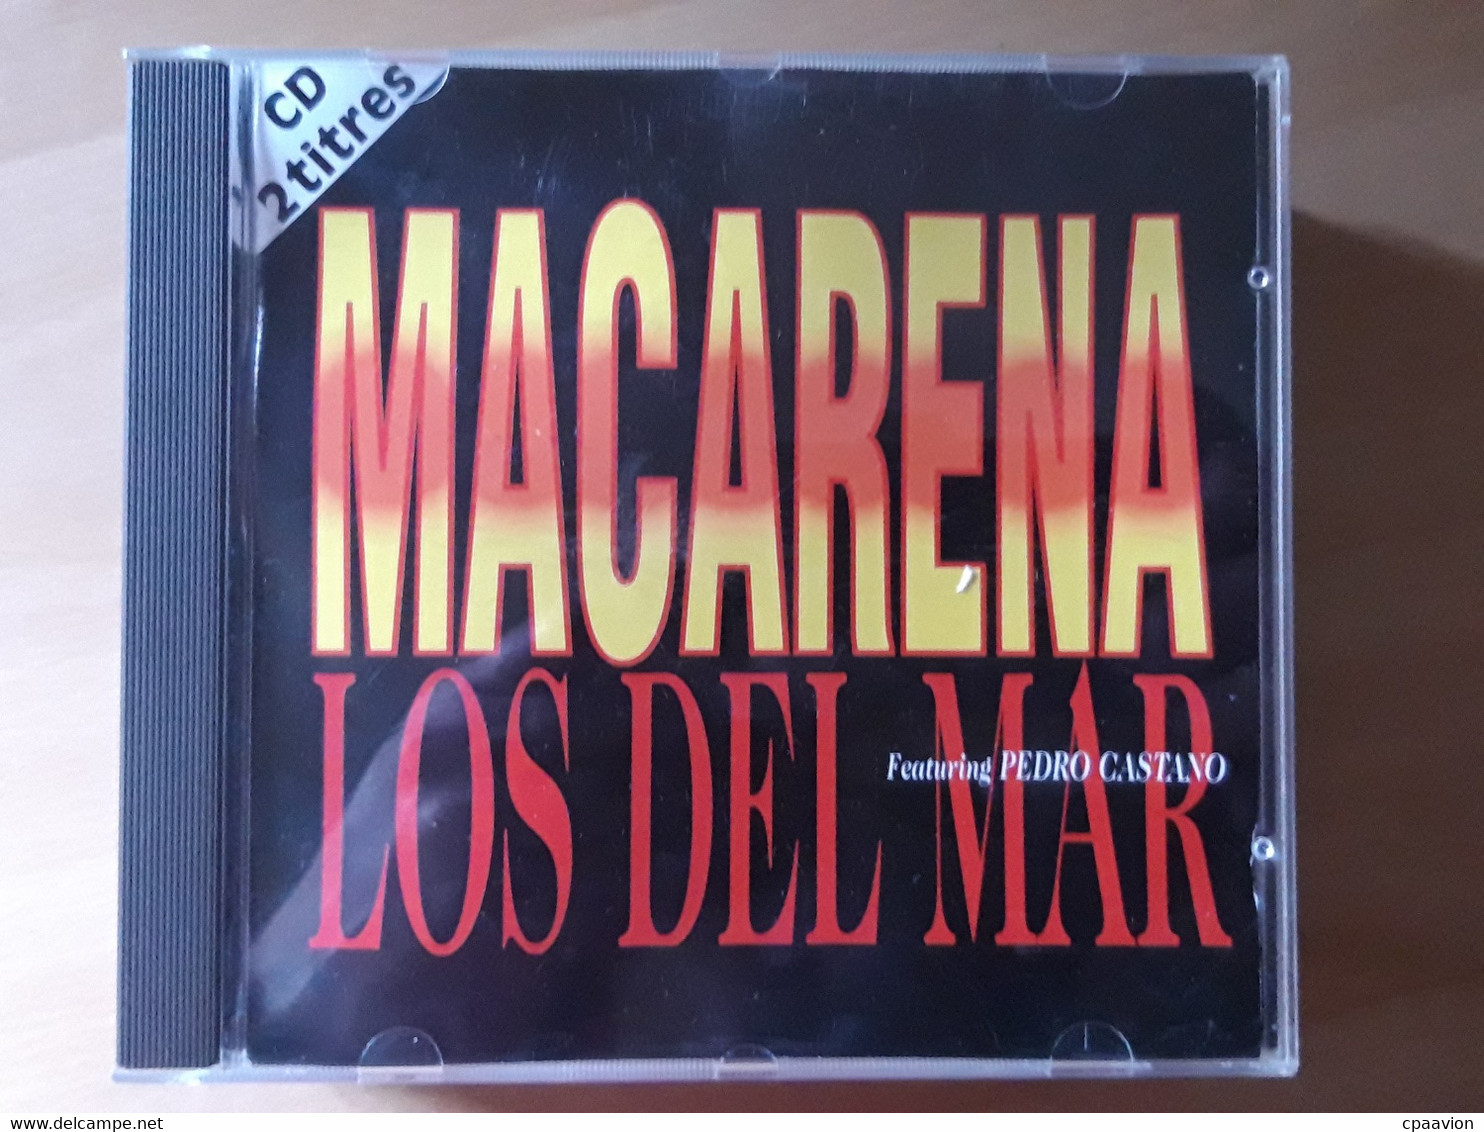 LOS DEL MAR; MACARENA - Wereldmuziek